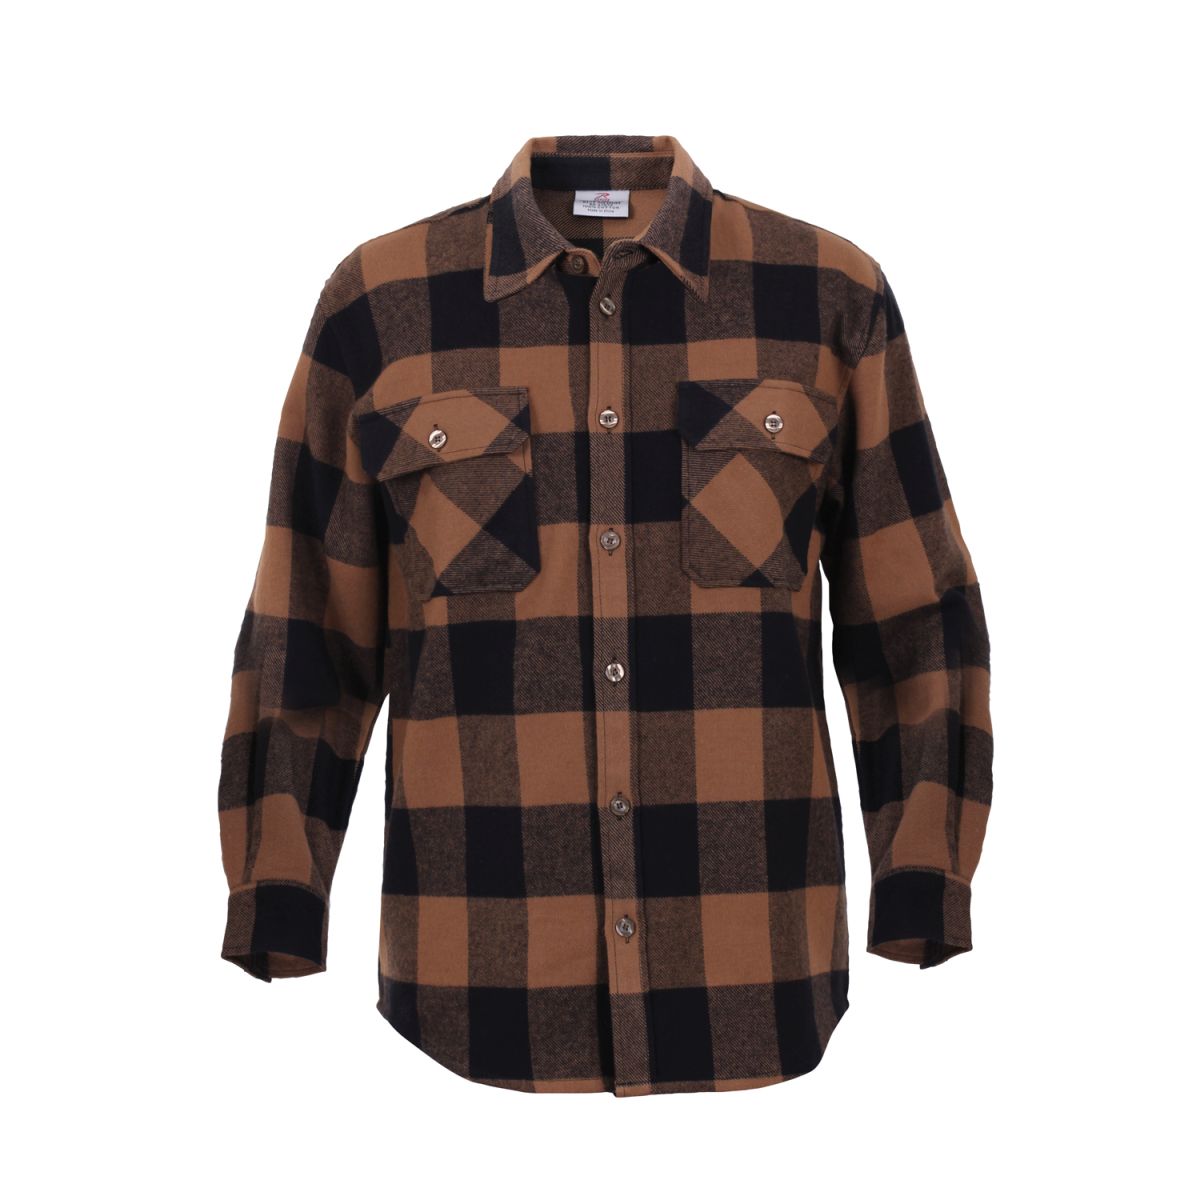 Lumberjack plaid shirt FLANNEL BROWN ROTHCO 4667 L-11